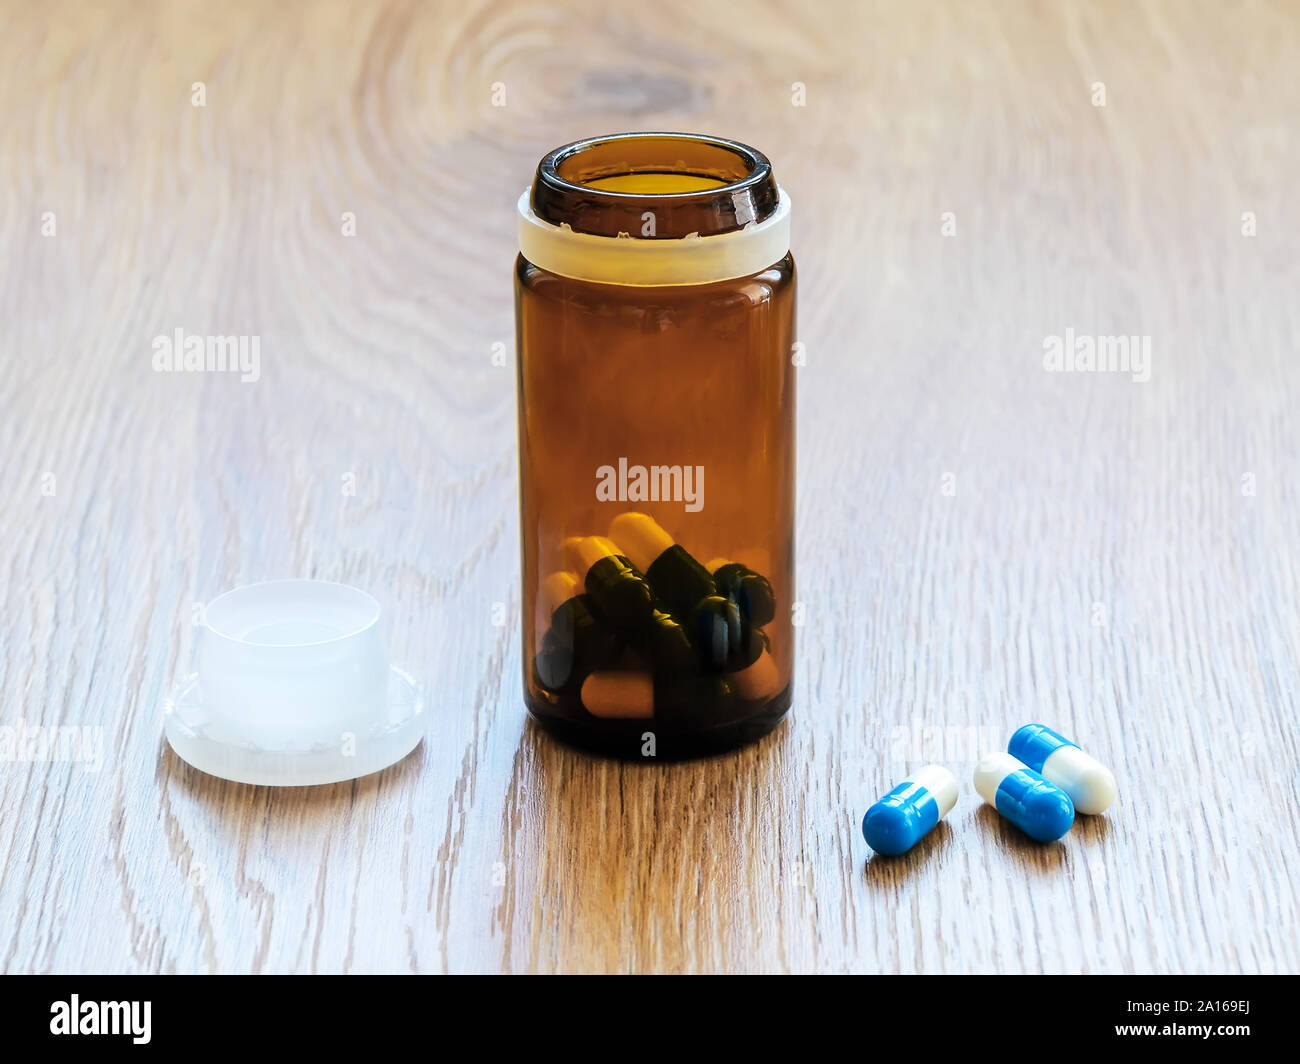 Las píldoras y jarra de cristal marrón con tapa en una tabla. Azul y blanca de cristal y cápsulas píldora botella en la superficie de madera marrón. A enfermarse y tomar las pastillas. Foto de stock